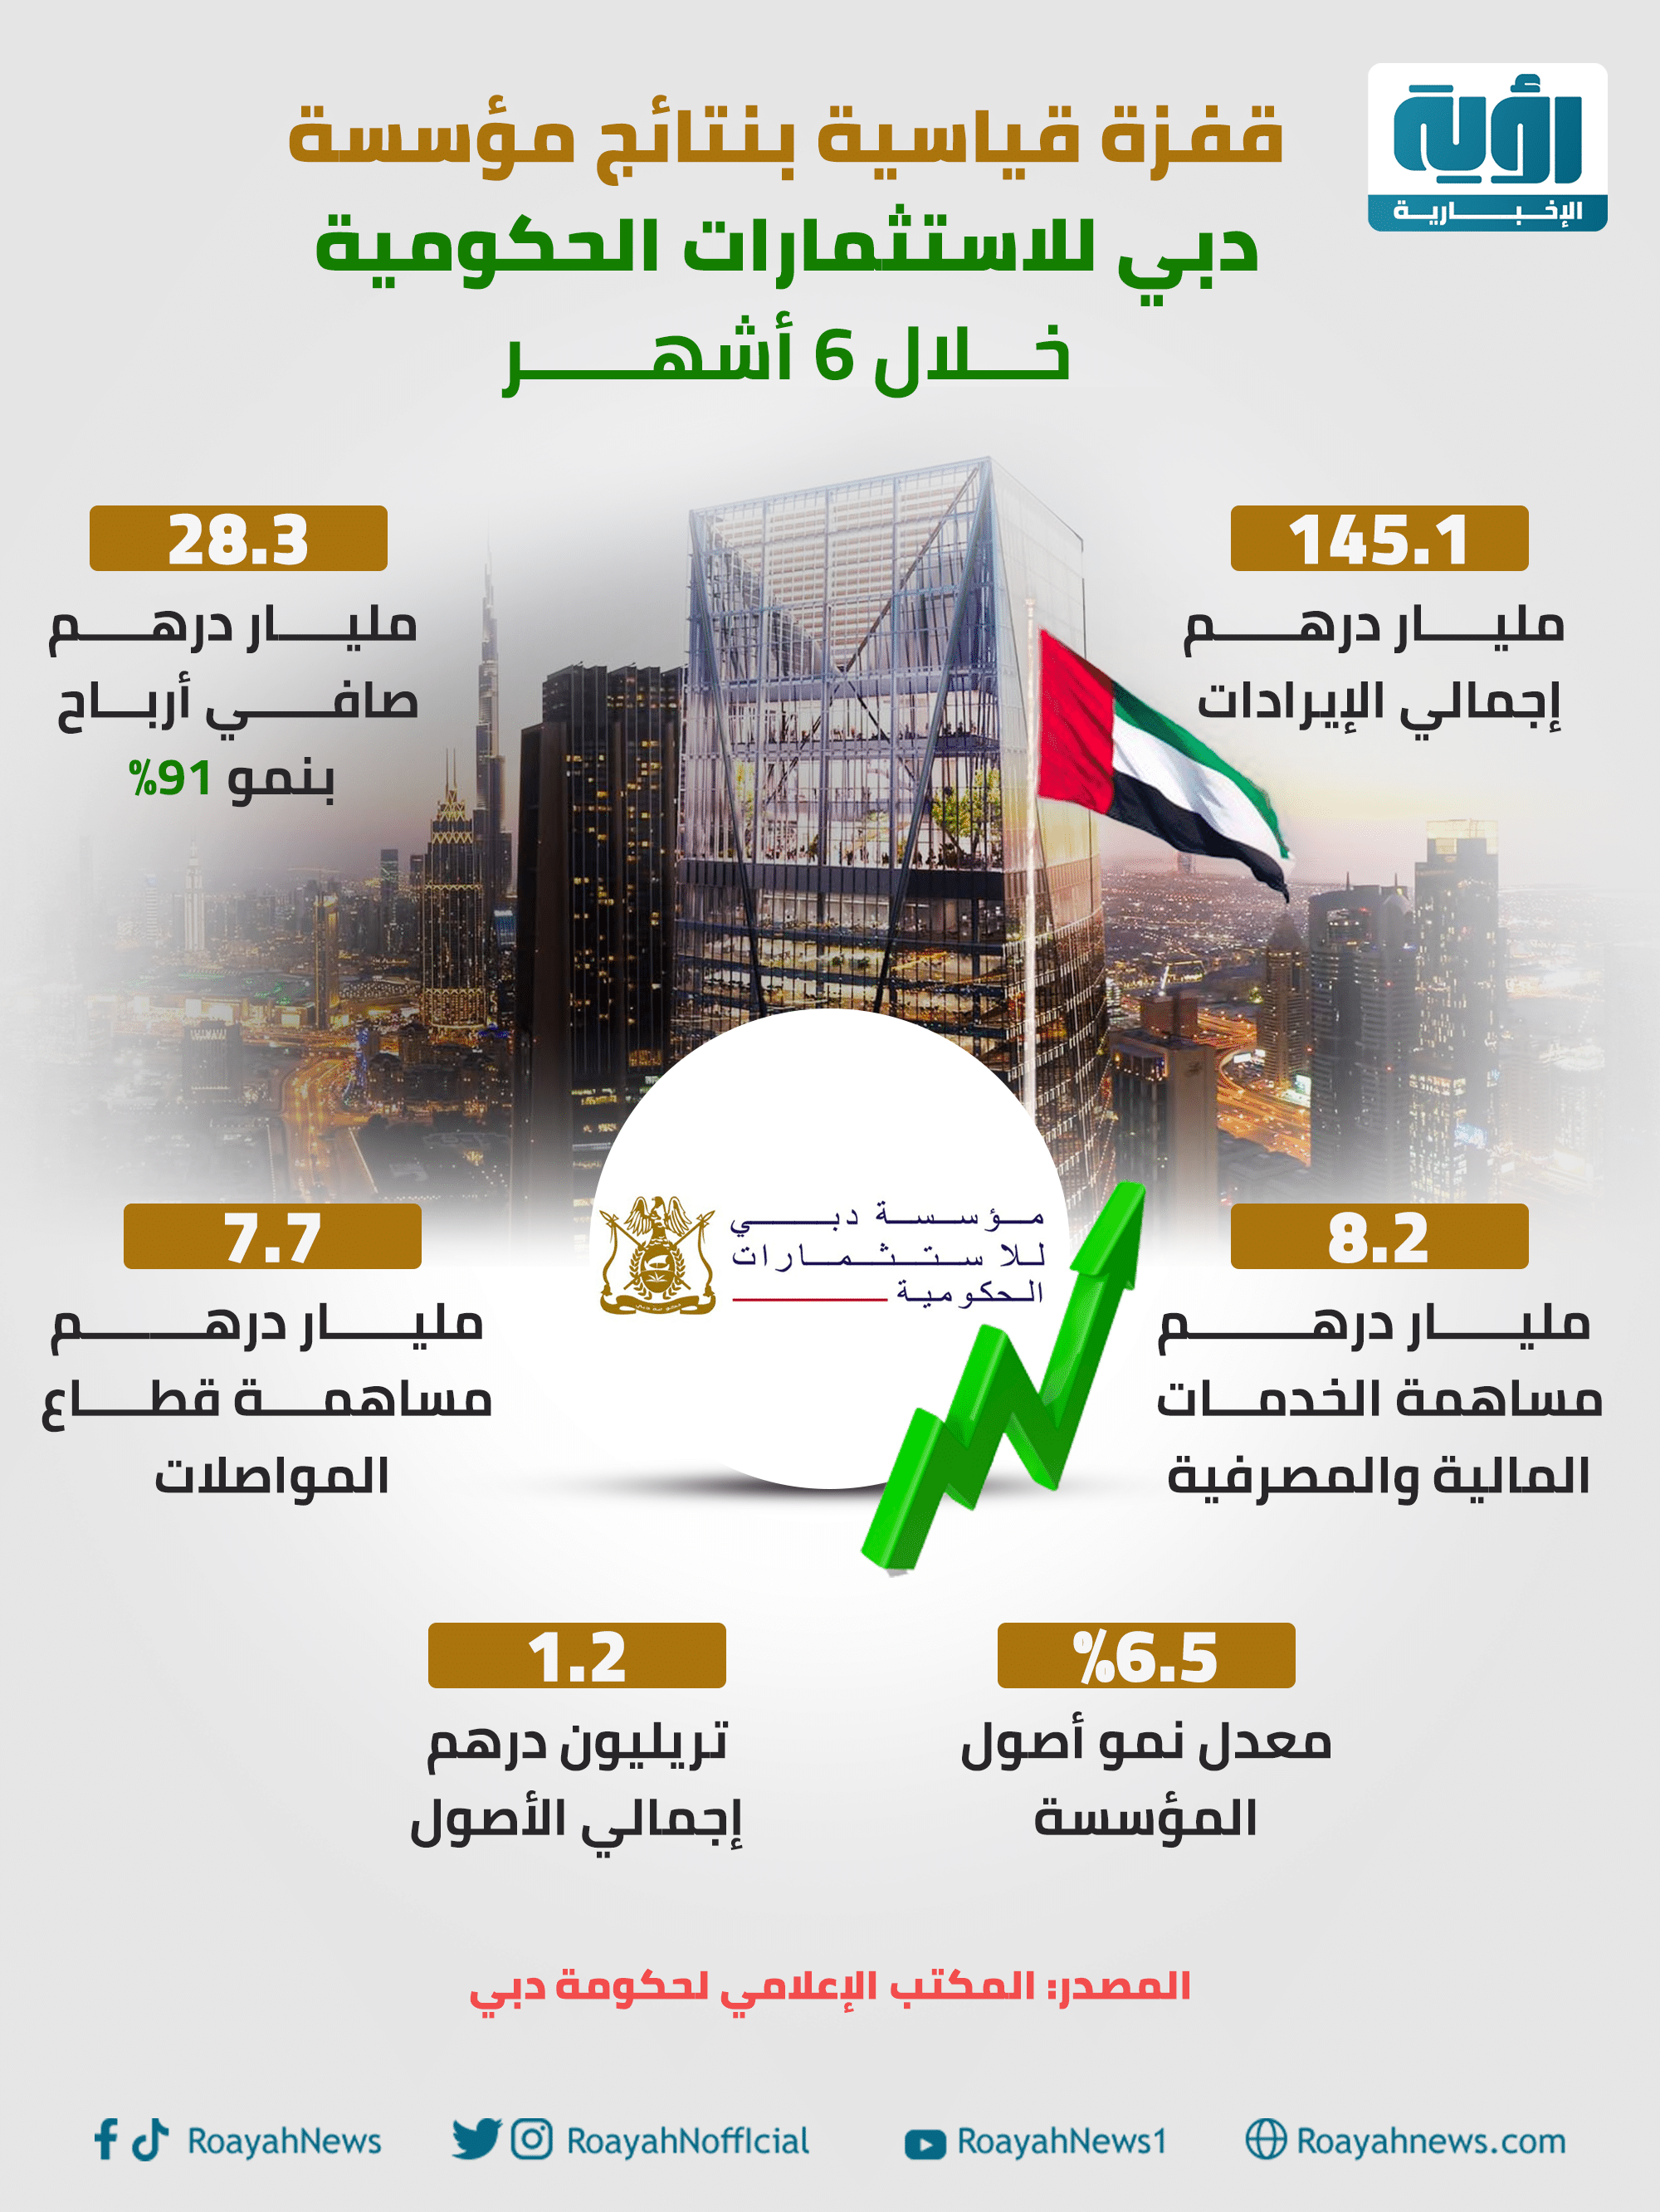 قفزة قياسية بنتائج مؤسسة دبي للاستثمارات الحكومية خلال 6 أشهر